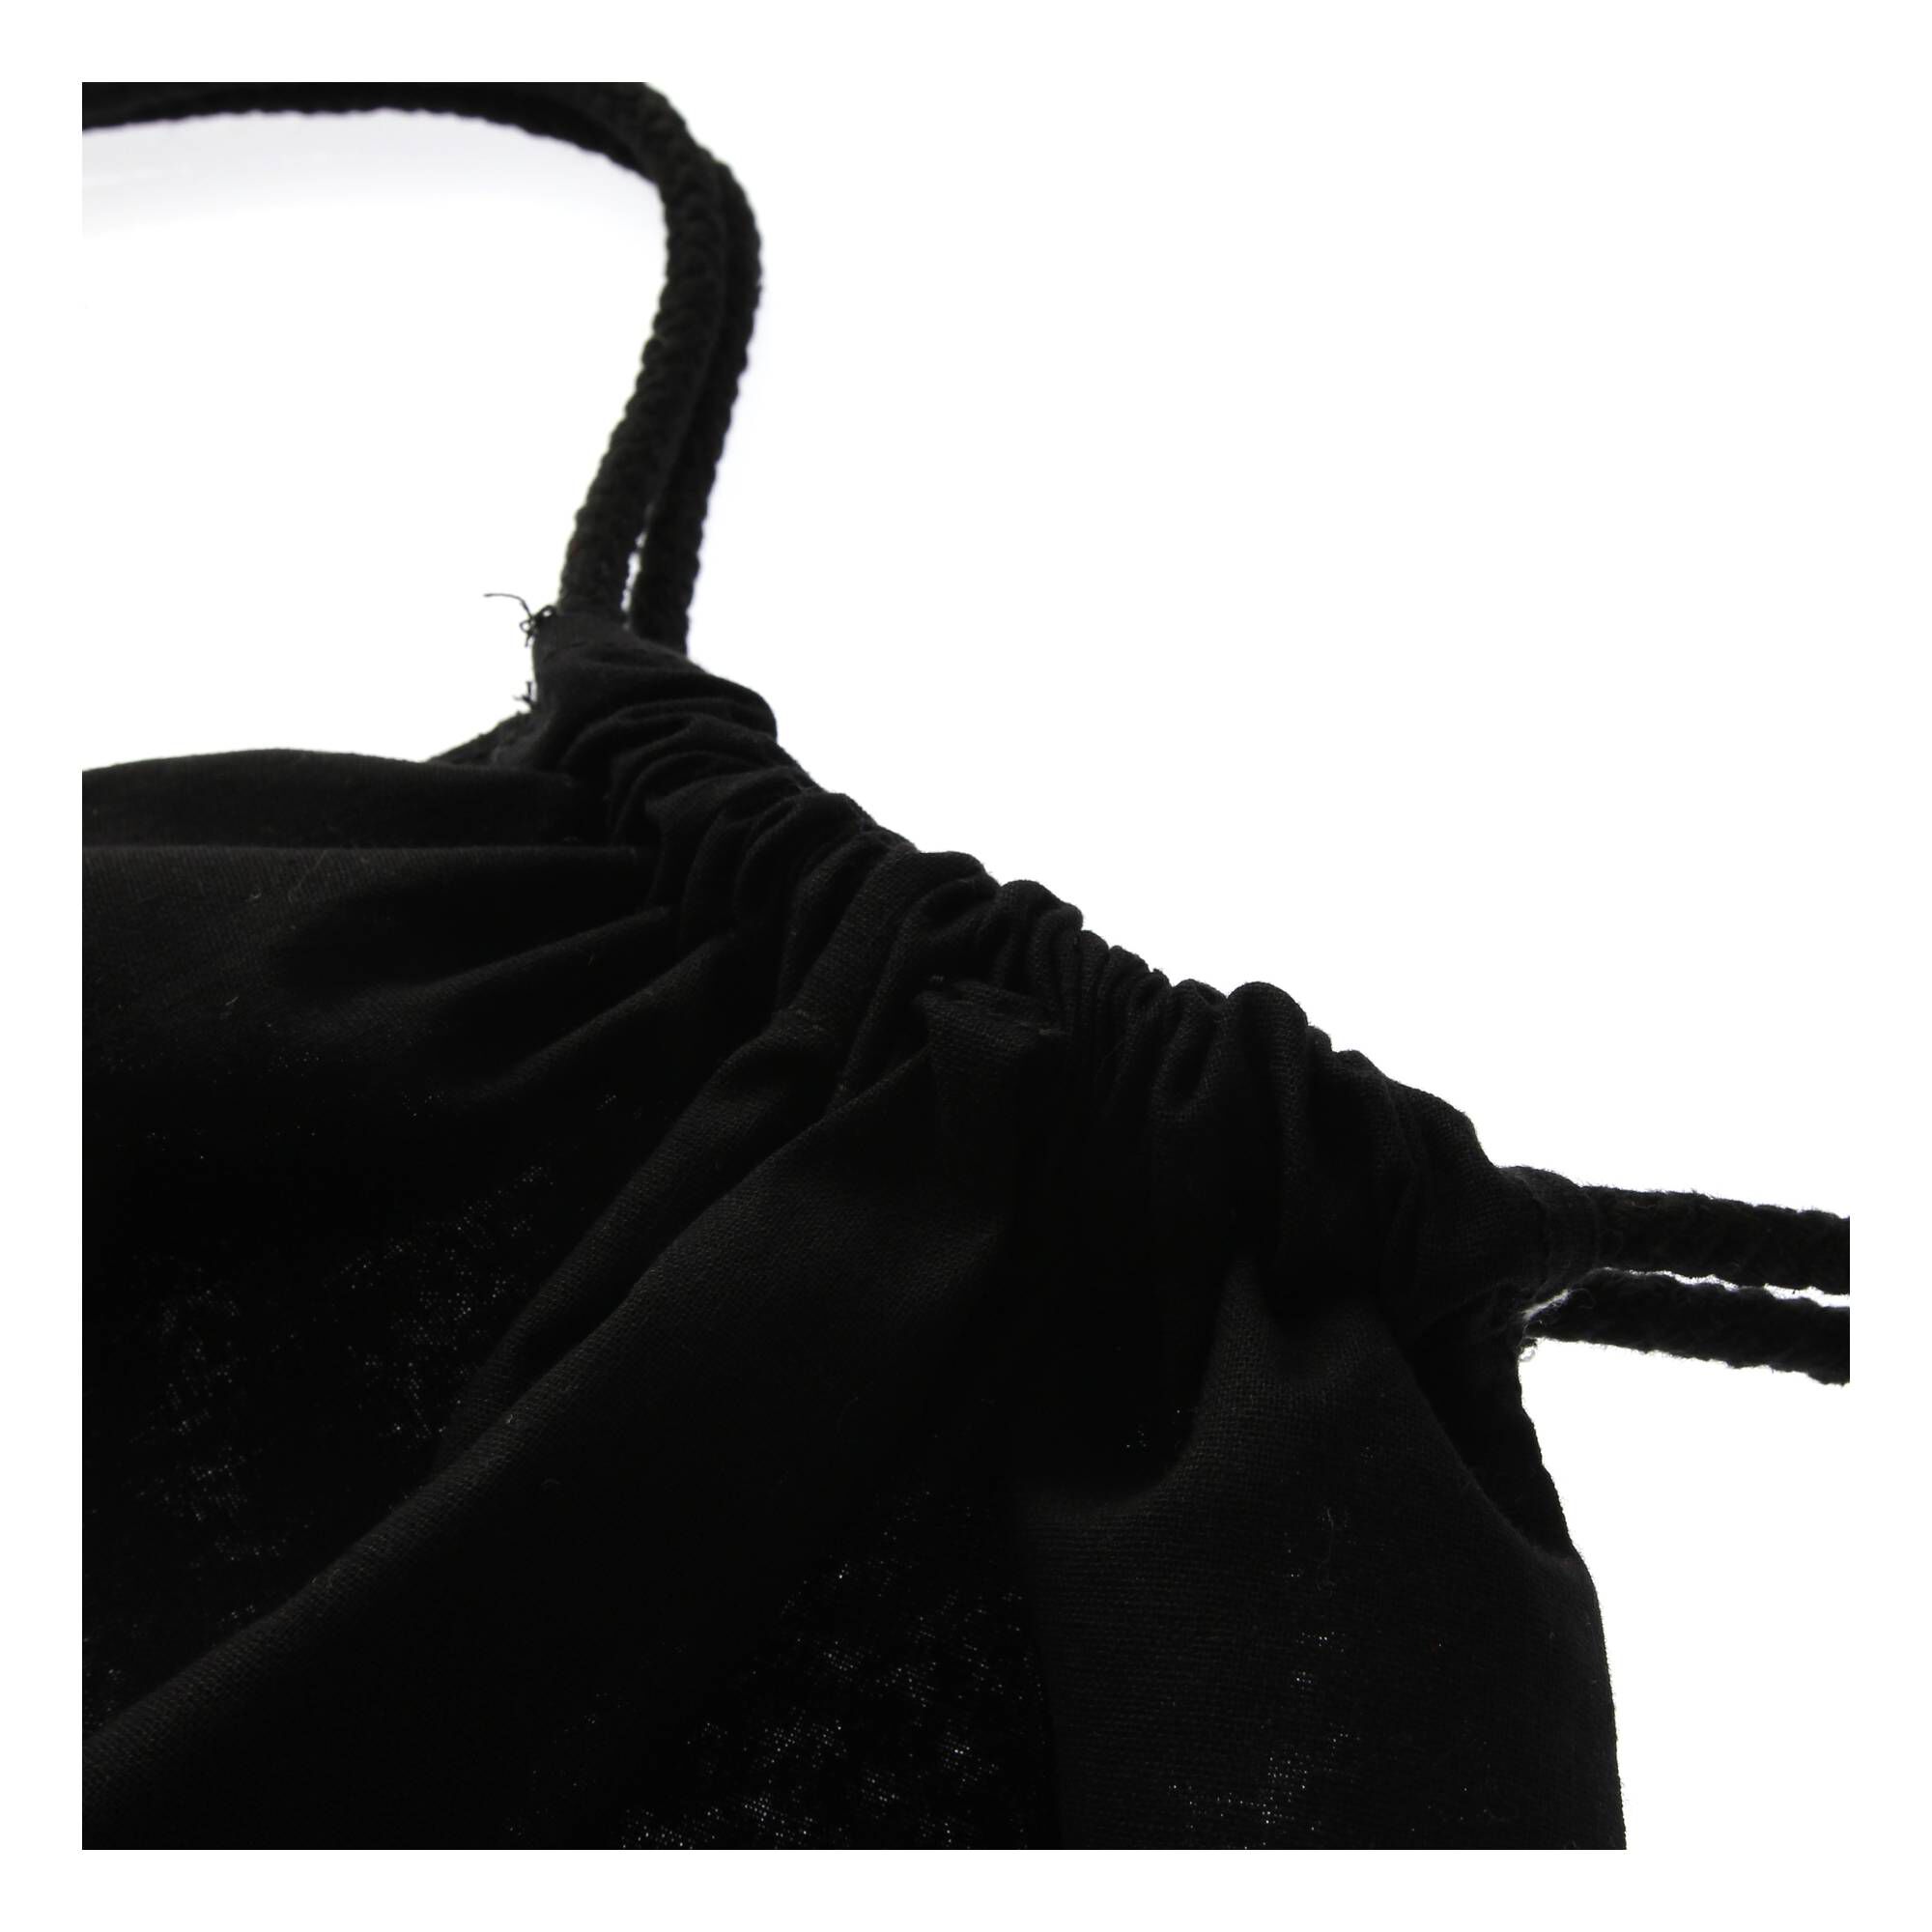 Black Cotton Drawstring Bag | Hobbycraft